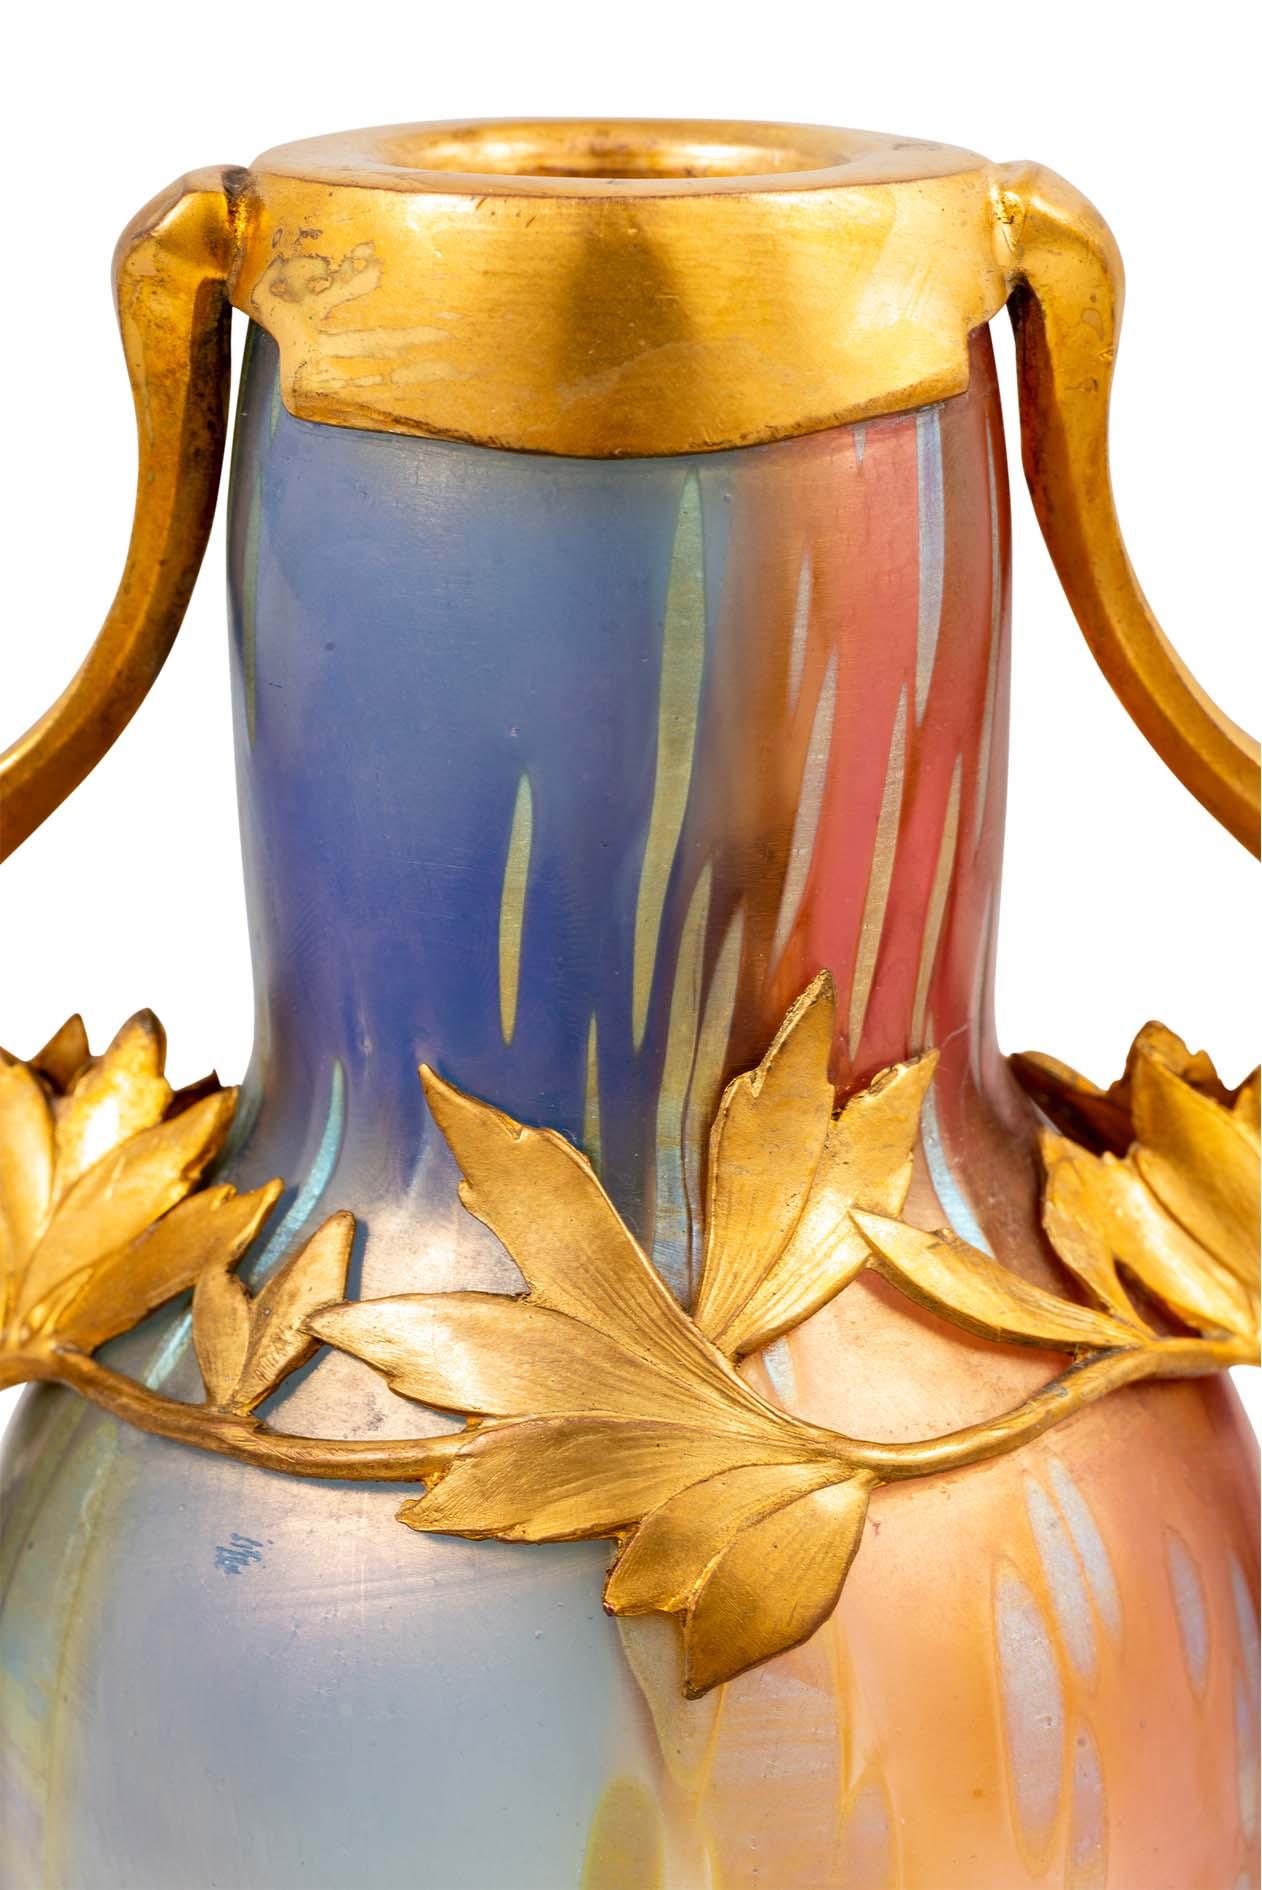 Glasvase hergestellt von Johann Loetz Witwe Tricolore Dekoration Zinn-Metallfassung entworfen von Bitter & Gobbers ca. 1900 Österreichischer Jugendstil vergoldet formgeblasen reduziert und irisierend Regenbogenfarben Blau Rot Grün Gelb

Diese